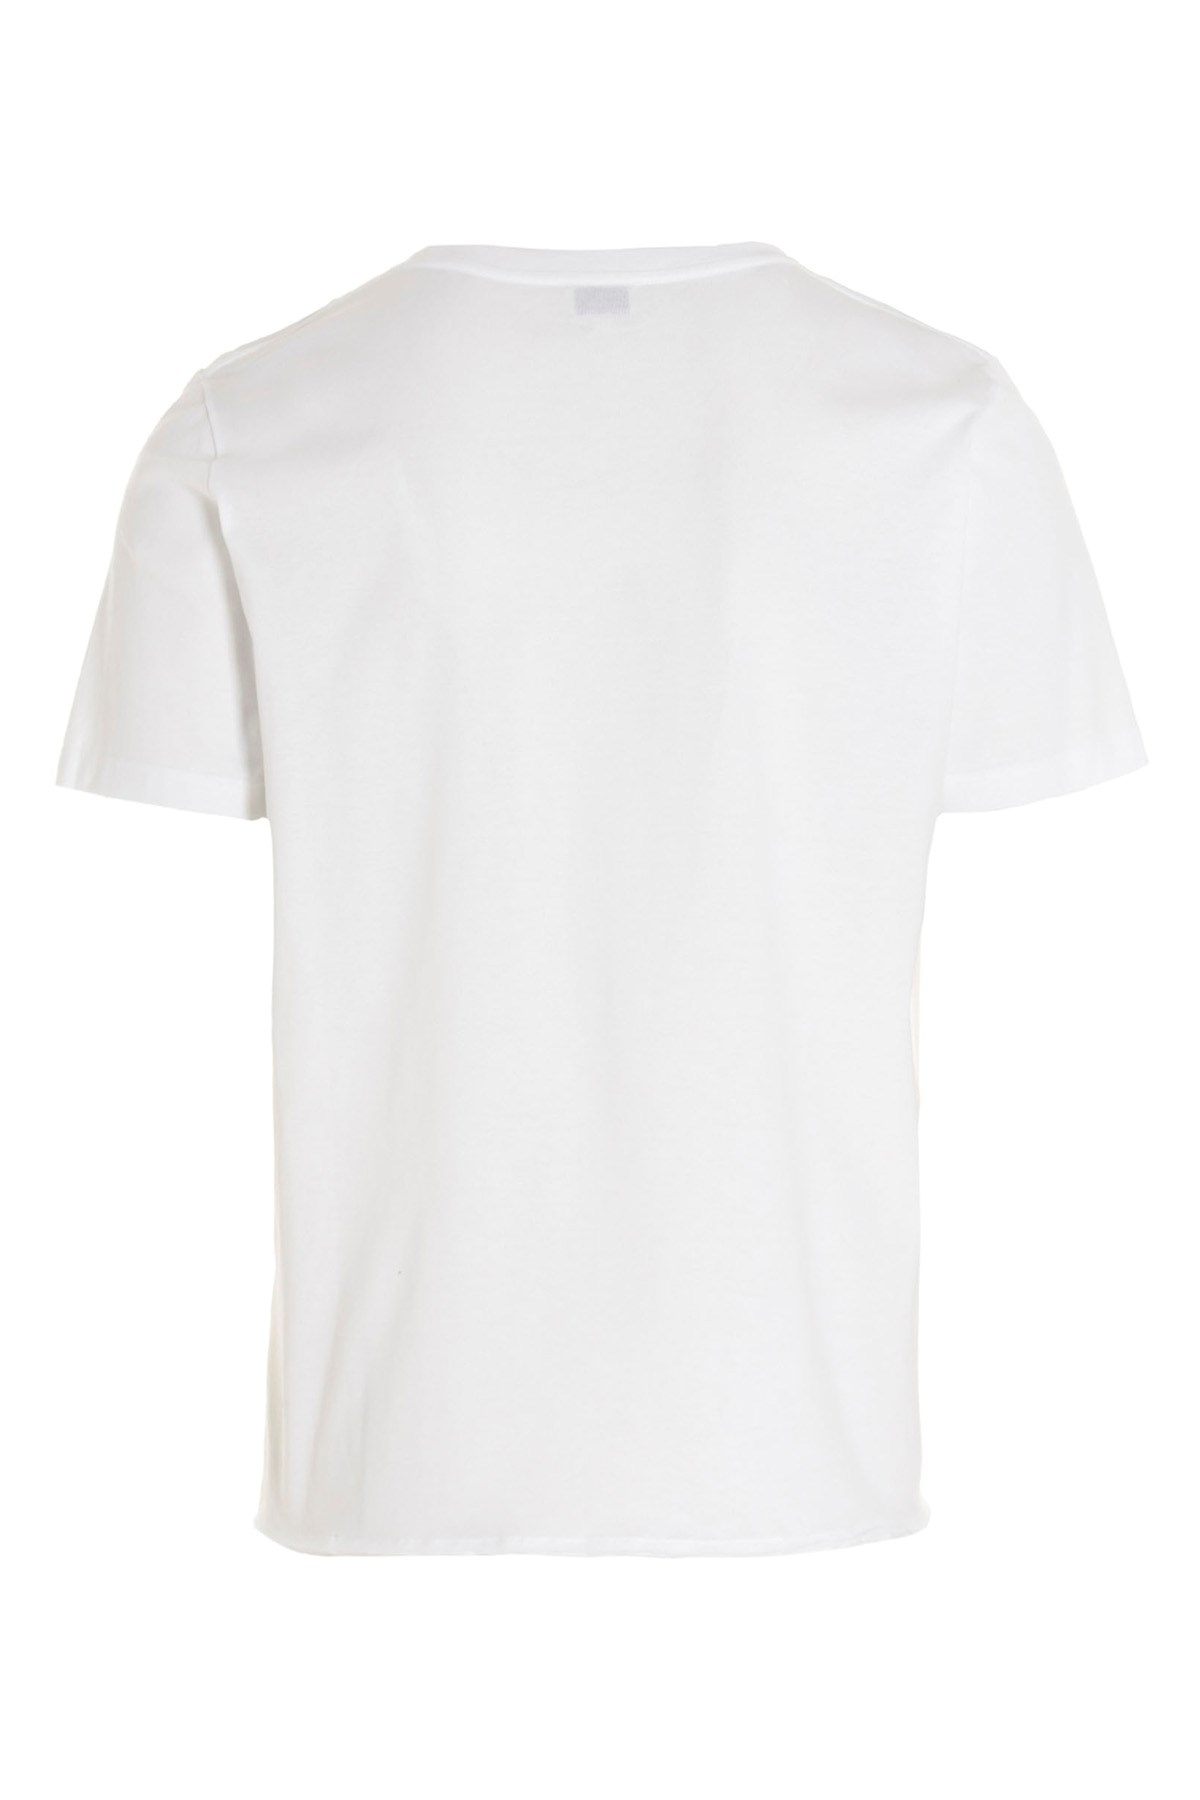 'Saint Laurent Rive Gauche' T-shirt - 3